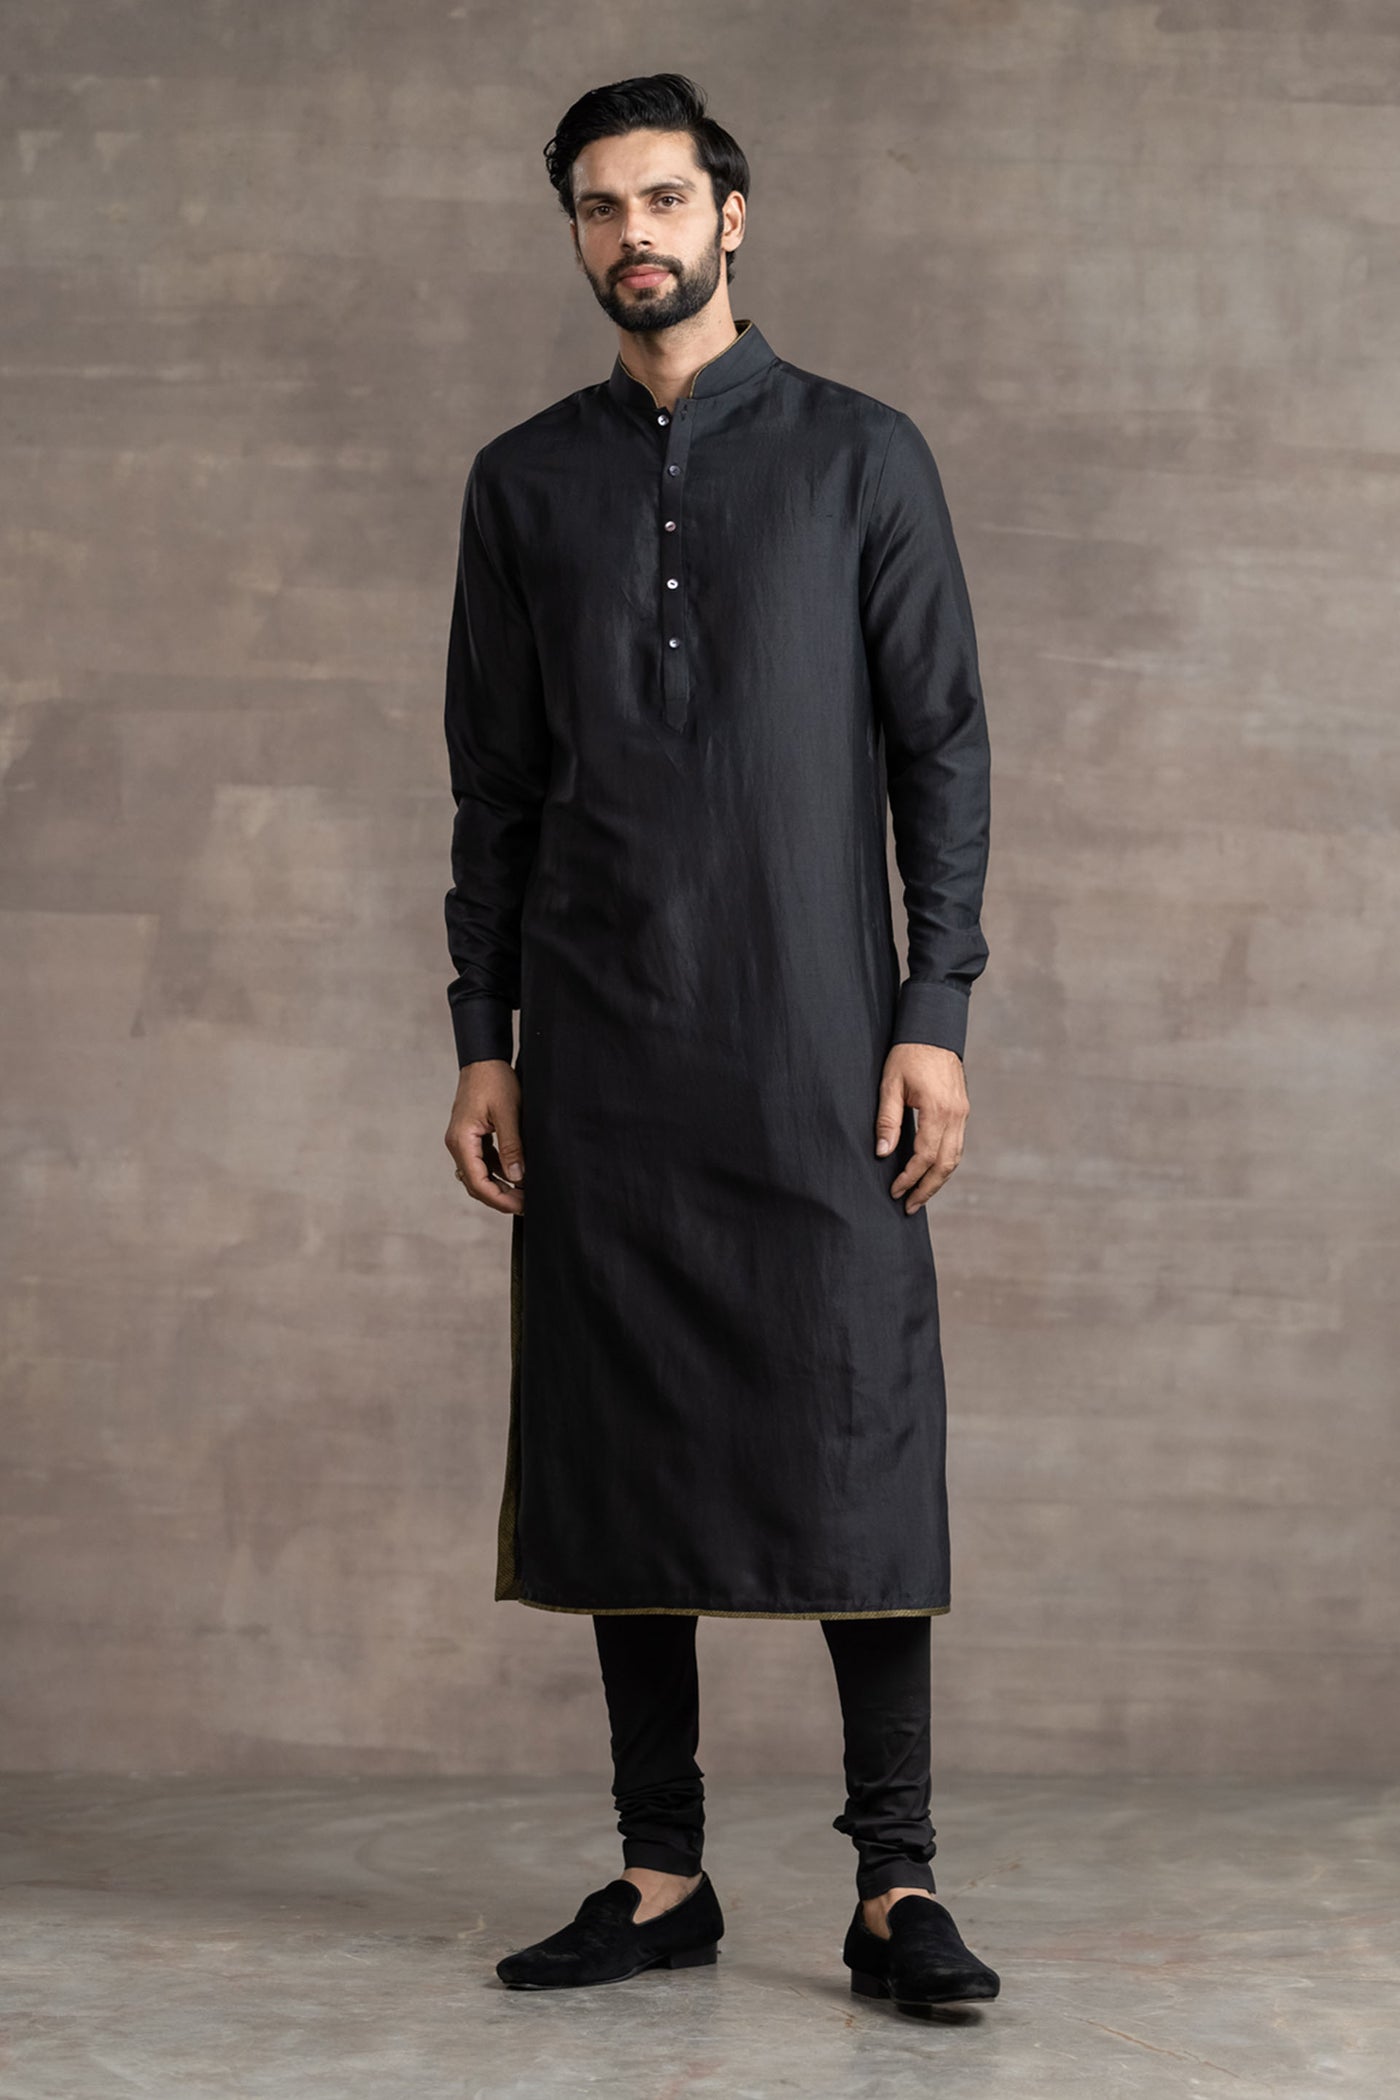 Tarun Tahitliani Black Silk Kurta indian designer wear menswear online shopping melange singapore